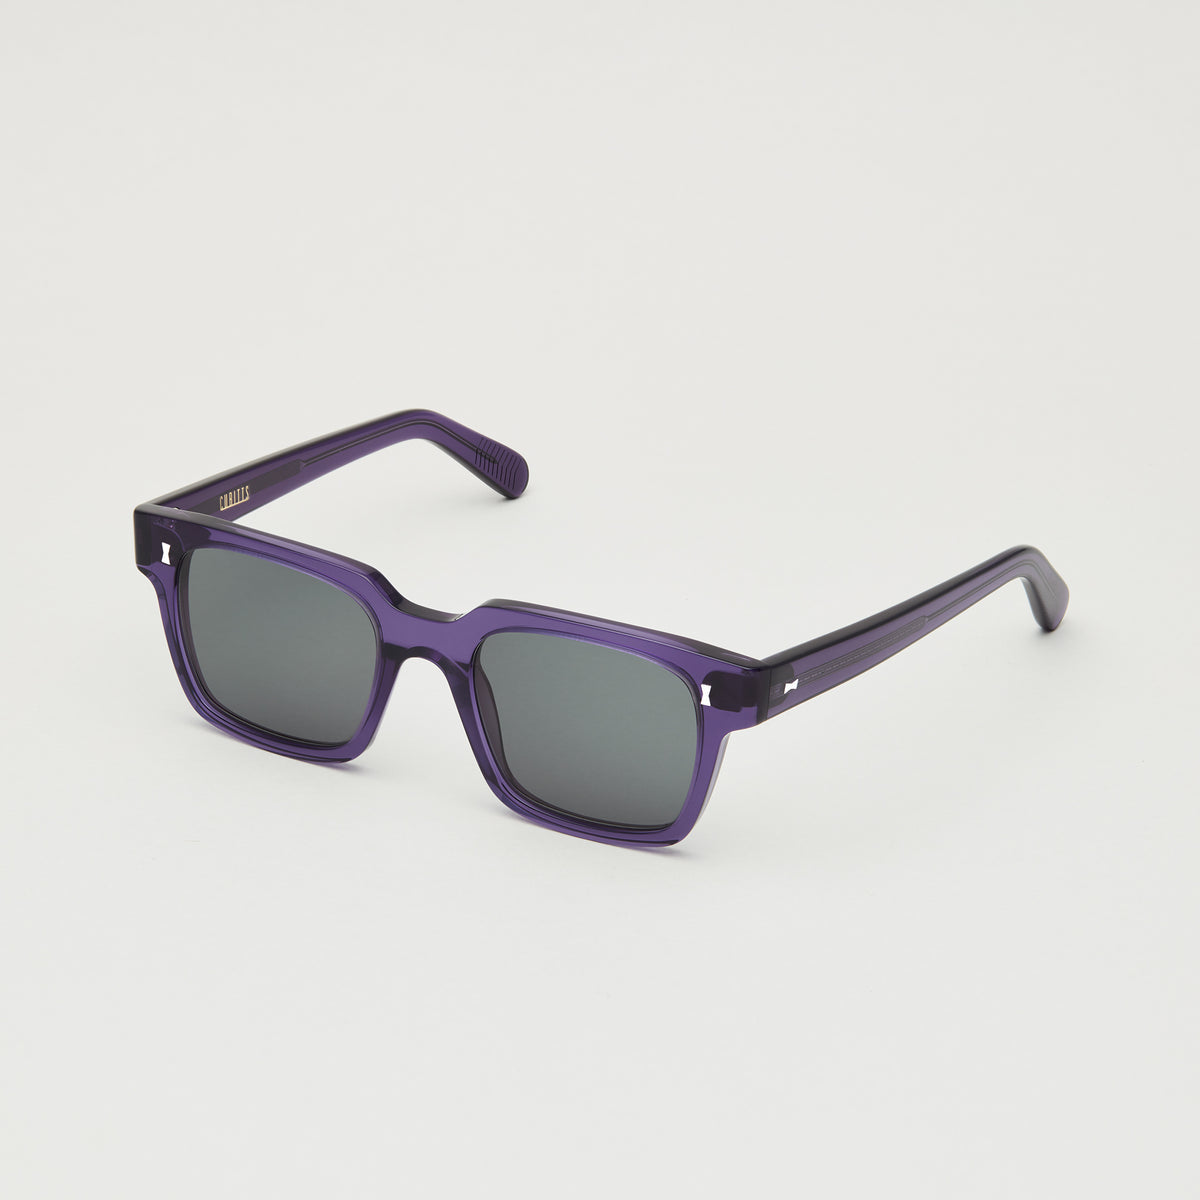 Violet Cubitts Panton sunglasses